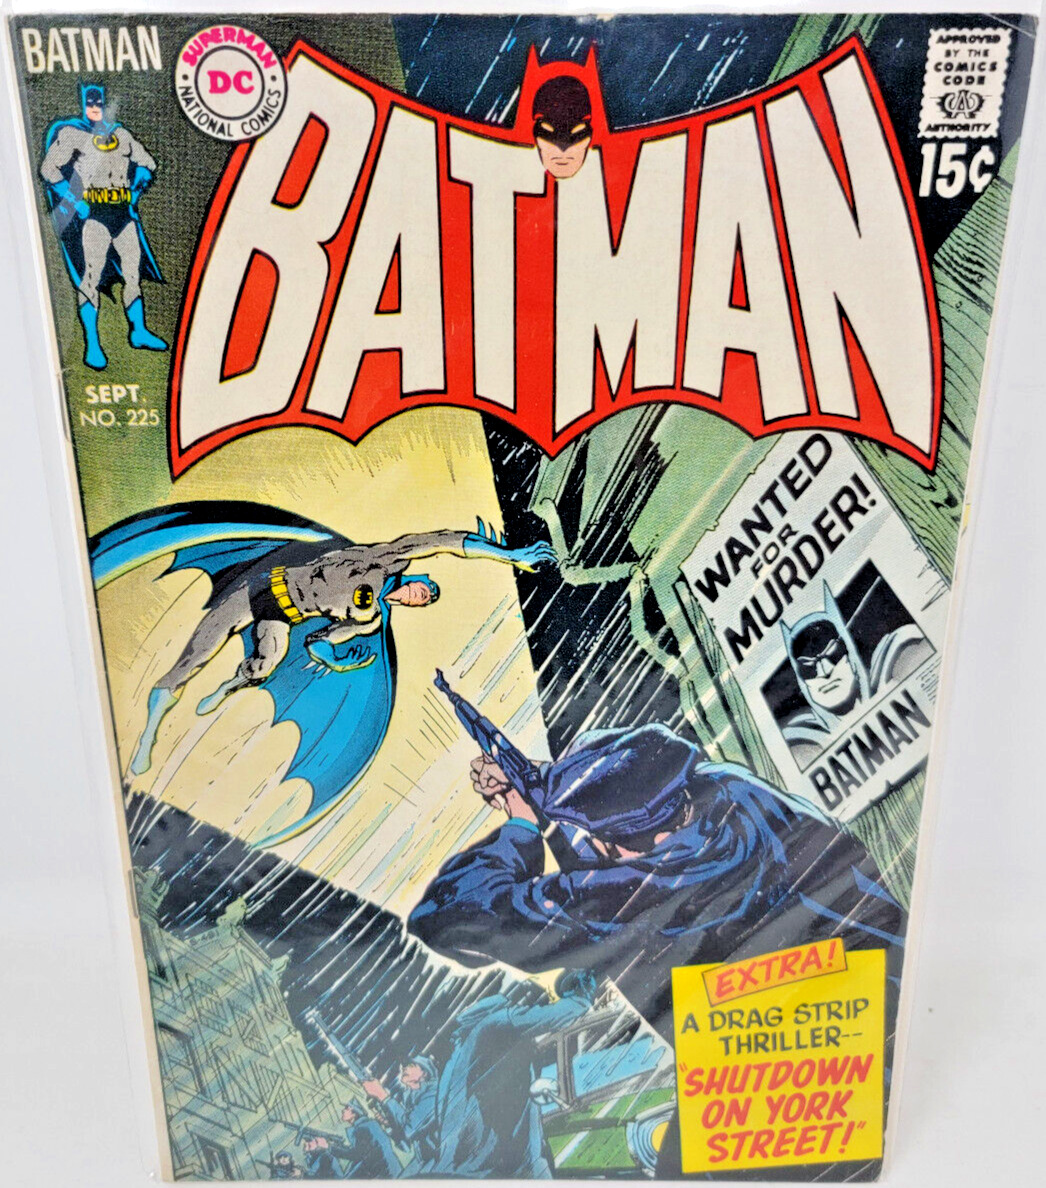 BATMAN #225 NEAL ADAMS COVER ART *1970* 6.5